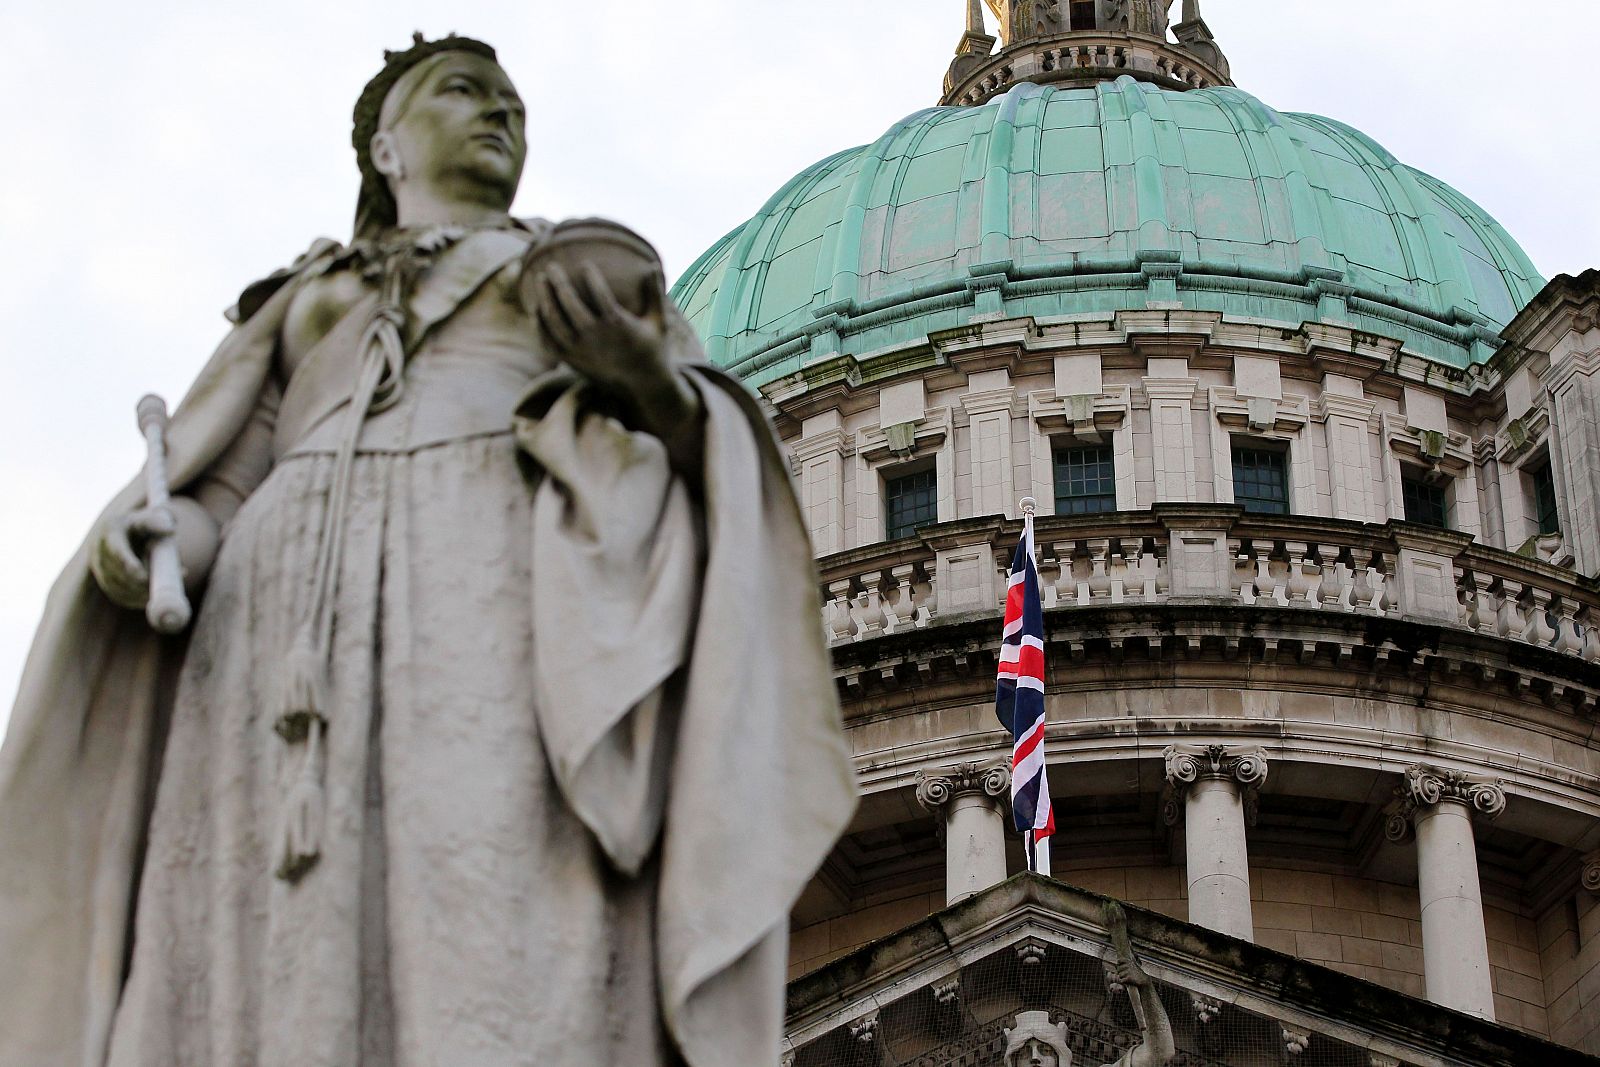 Una estatua de la reina Victoria aparece en primer plano frente al ayuntamiento de Belfast, donde ondea la Union Jack, la bandera británica